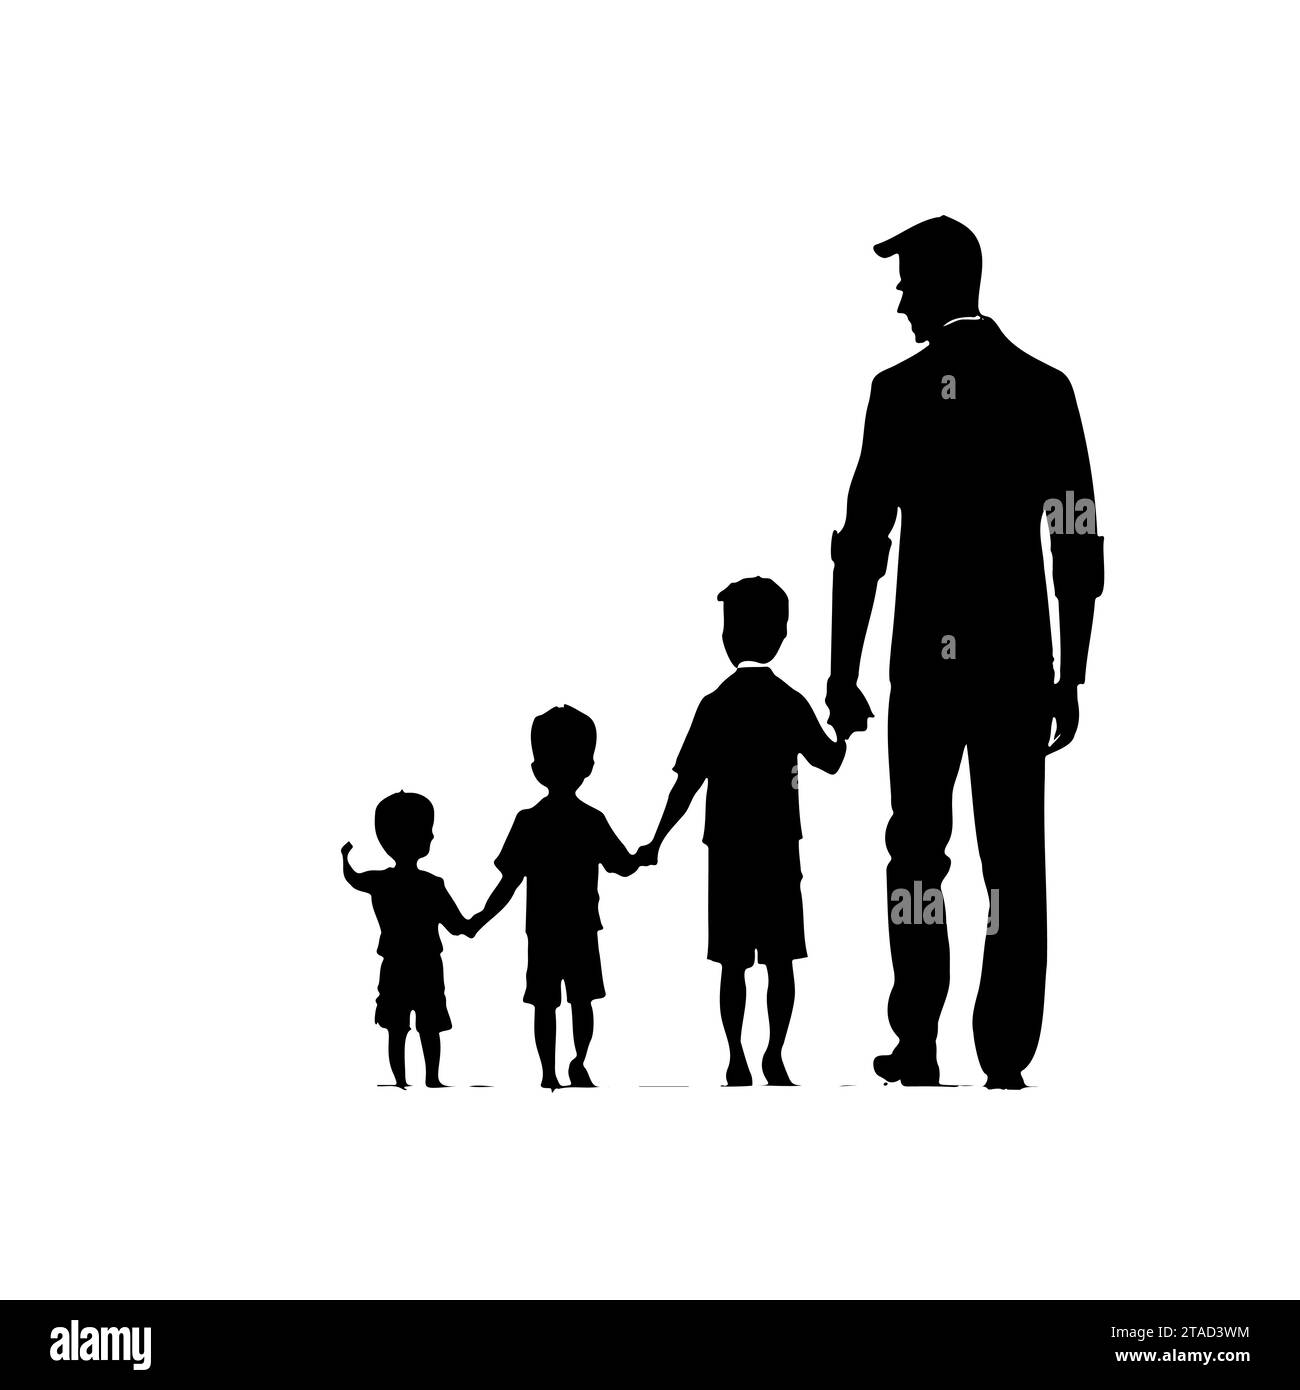 Dessin de silhouette père marchant main dans la main avec ses enfants vue de l'arrière. Vecteur dessiné à la main isolé sur un fond blanc Illustration de Vecteur